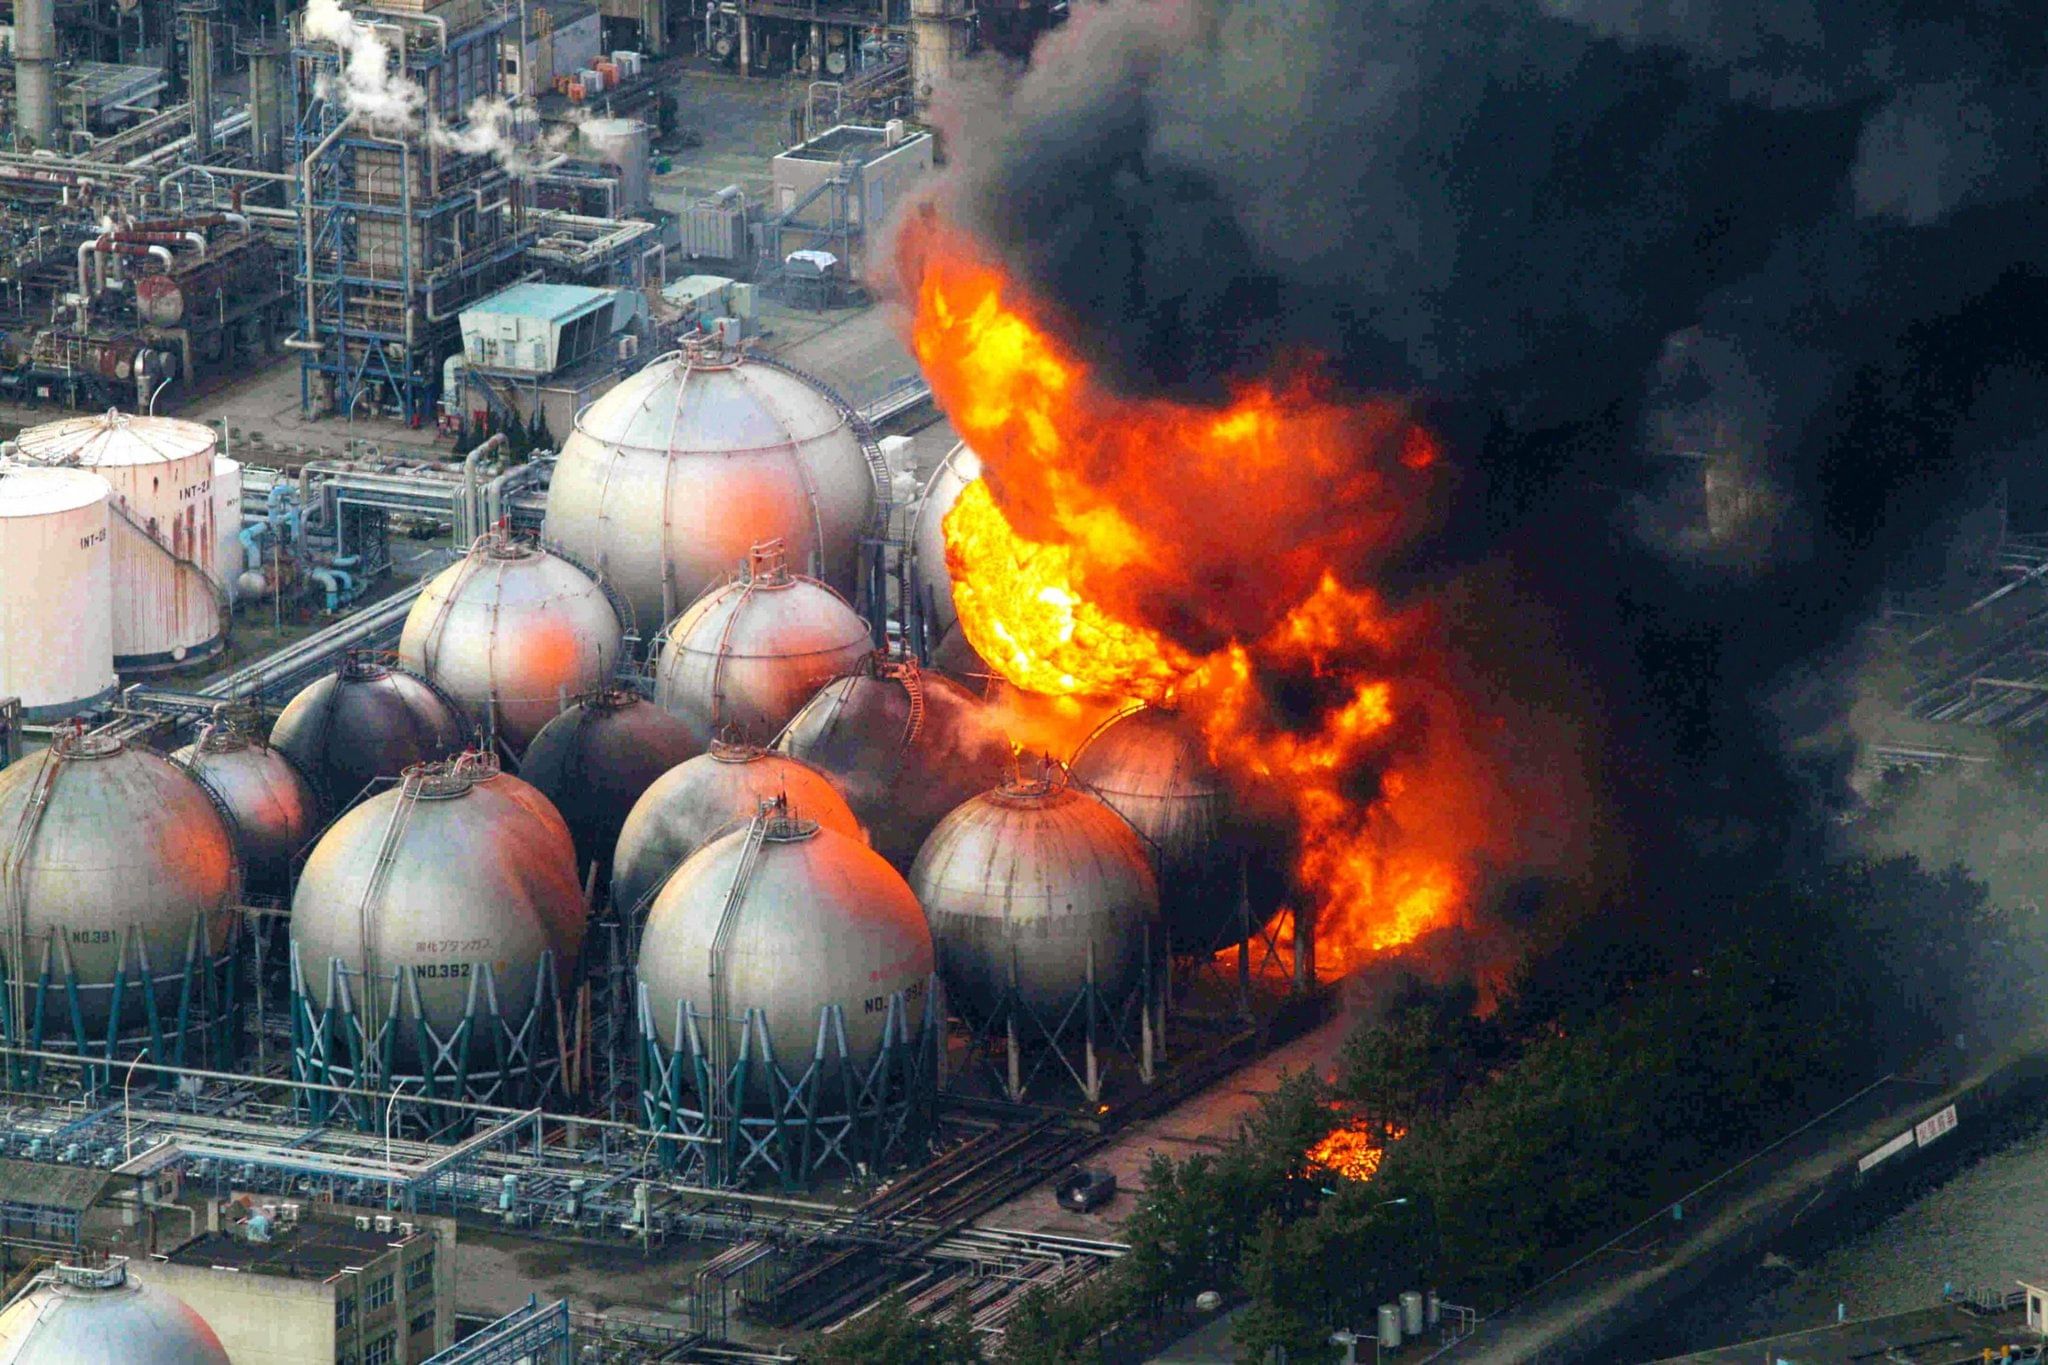 Типы аварий на аэс. Авария на АЭС Фукусима-1. Авария на АЭС Фукусима-1 (Япония, 2011).. Техногенные катастрофы Фукусима-1 авария АЭС. Авария на АЭС Фукусима-1 взрыв 1 реактора.